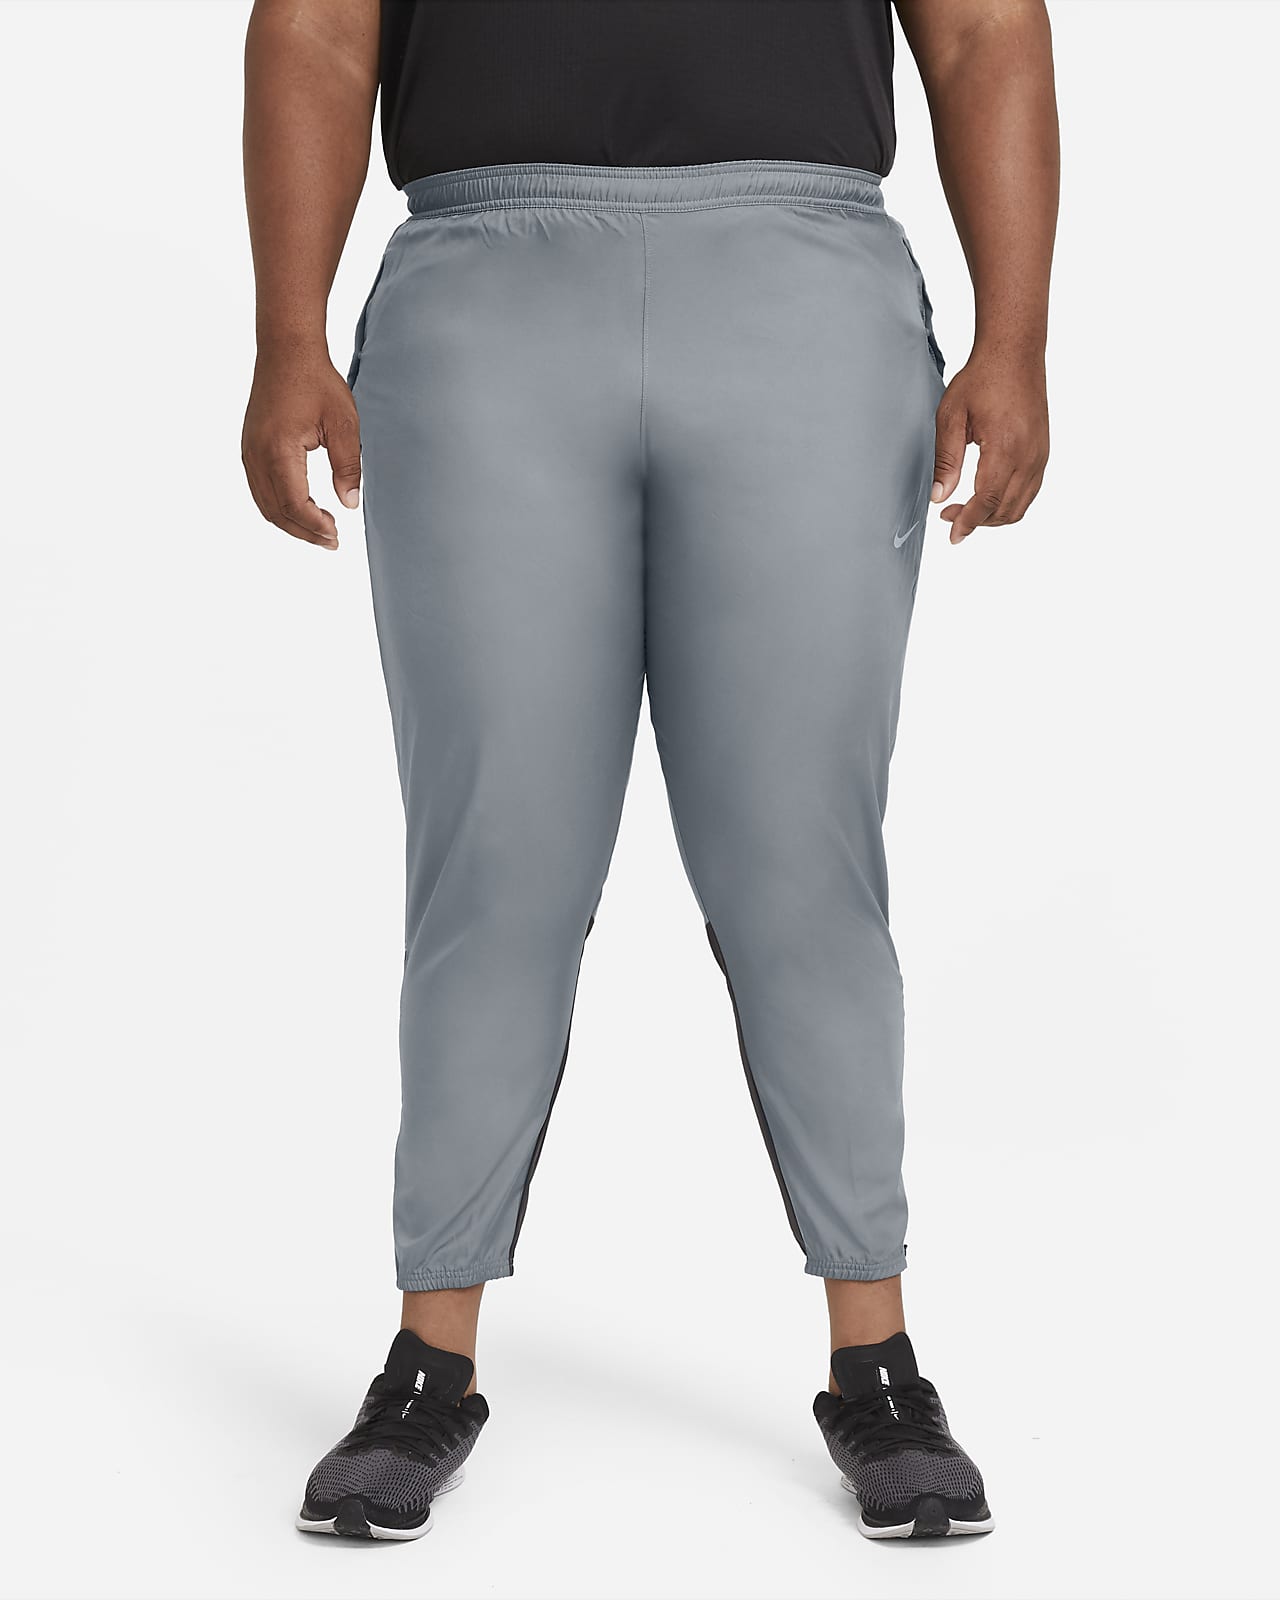 nike grey running pants